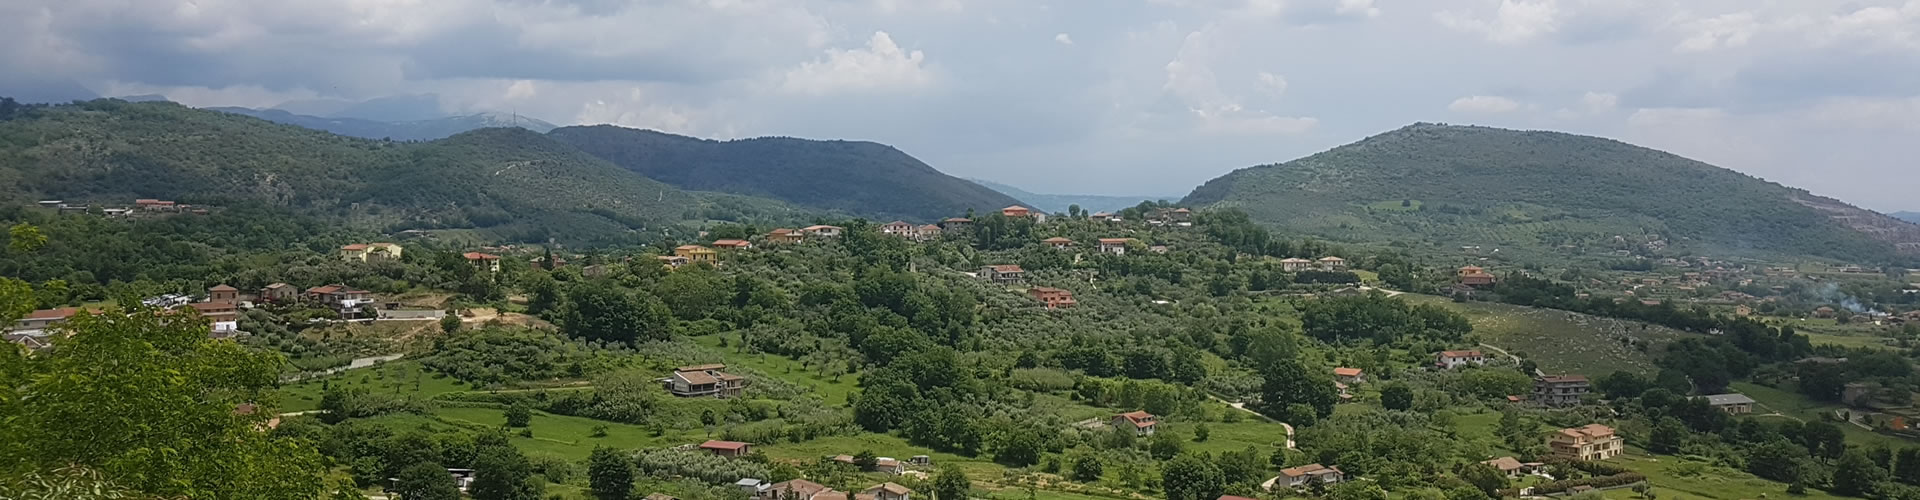 Valle del Sacco